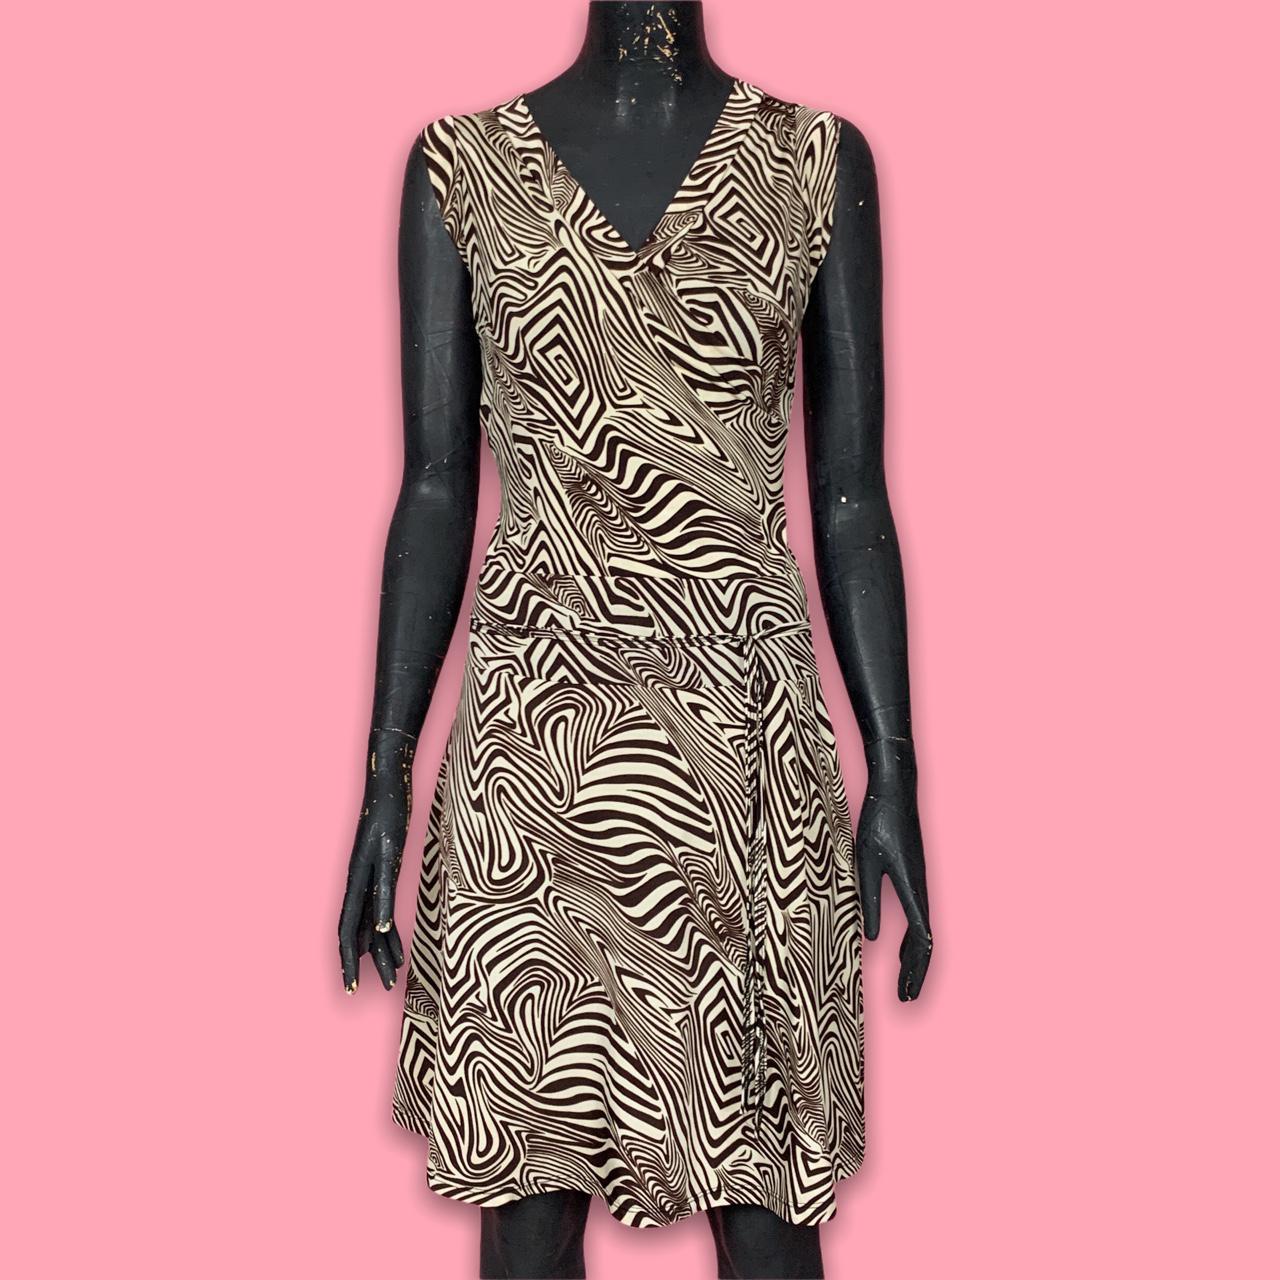 🧨Brown Zebra Print Dress 🧨Vintage Y2K / early 2000s... - Depop